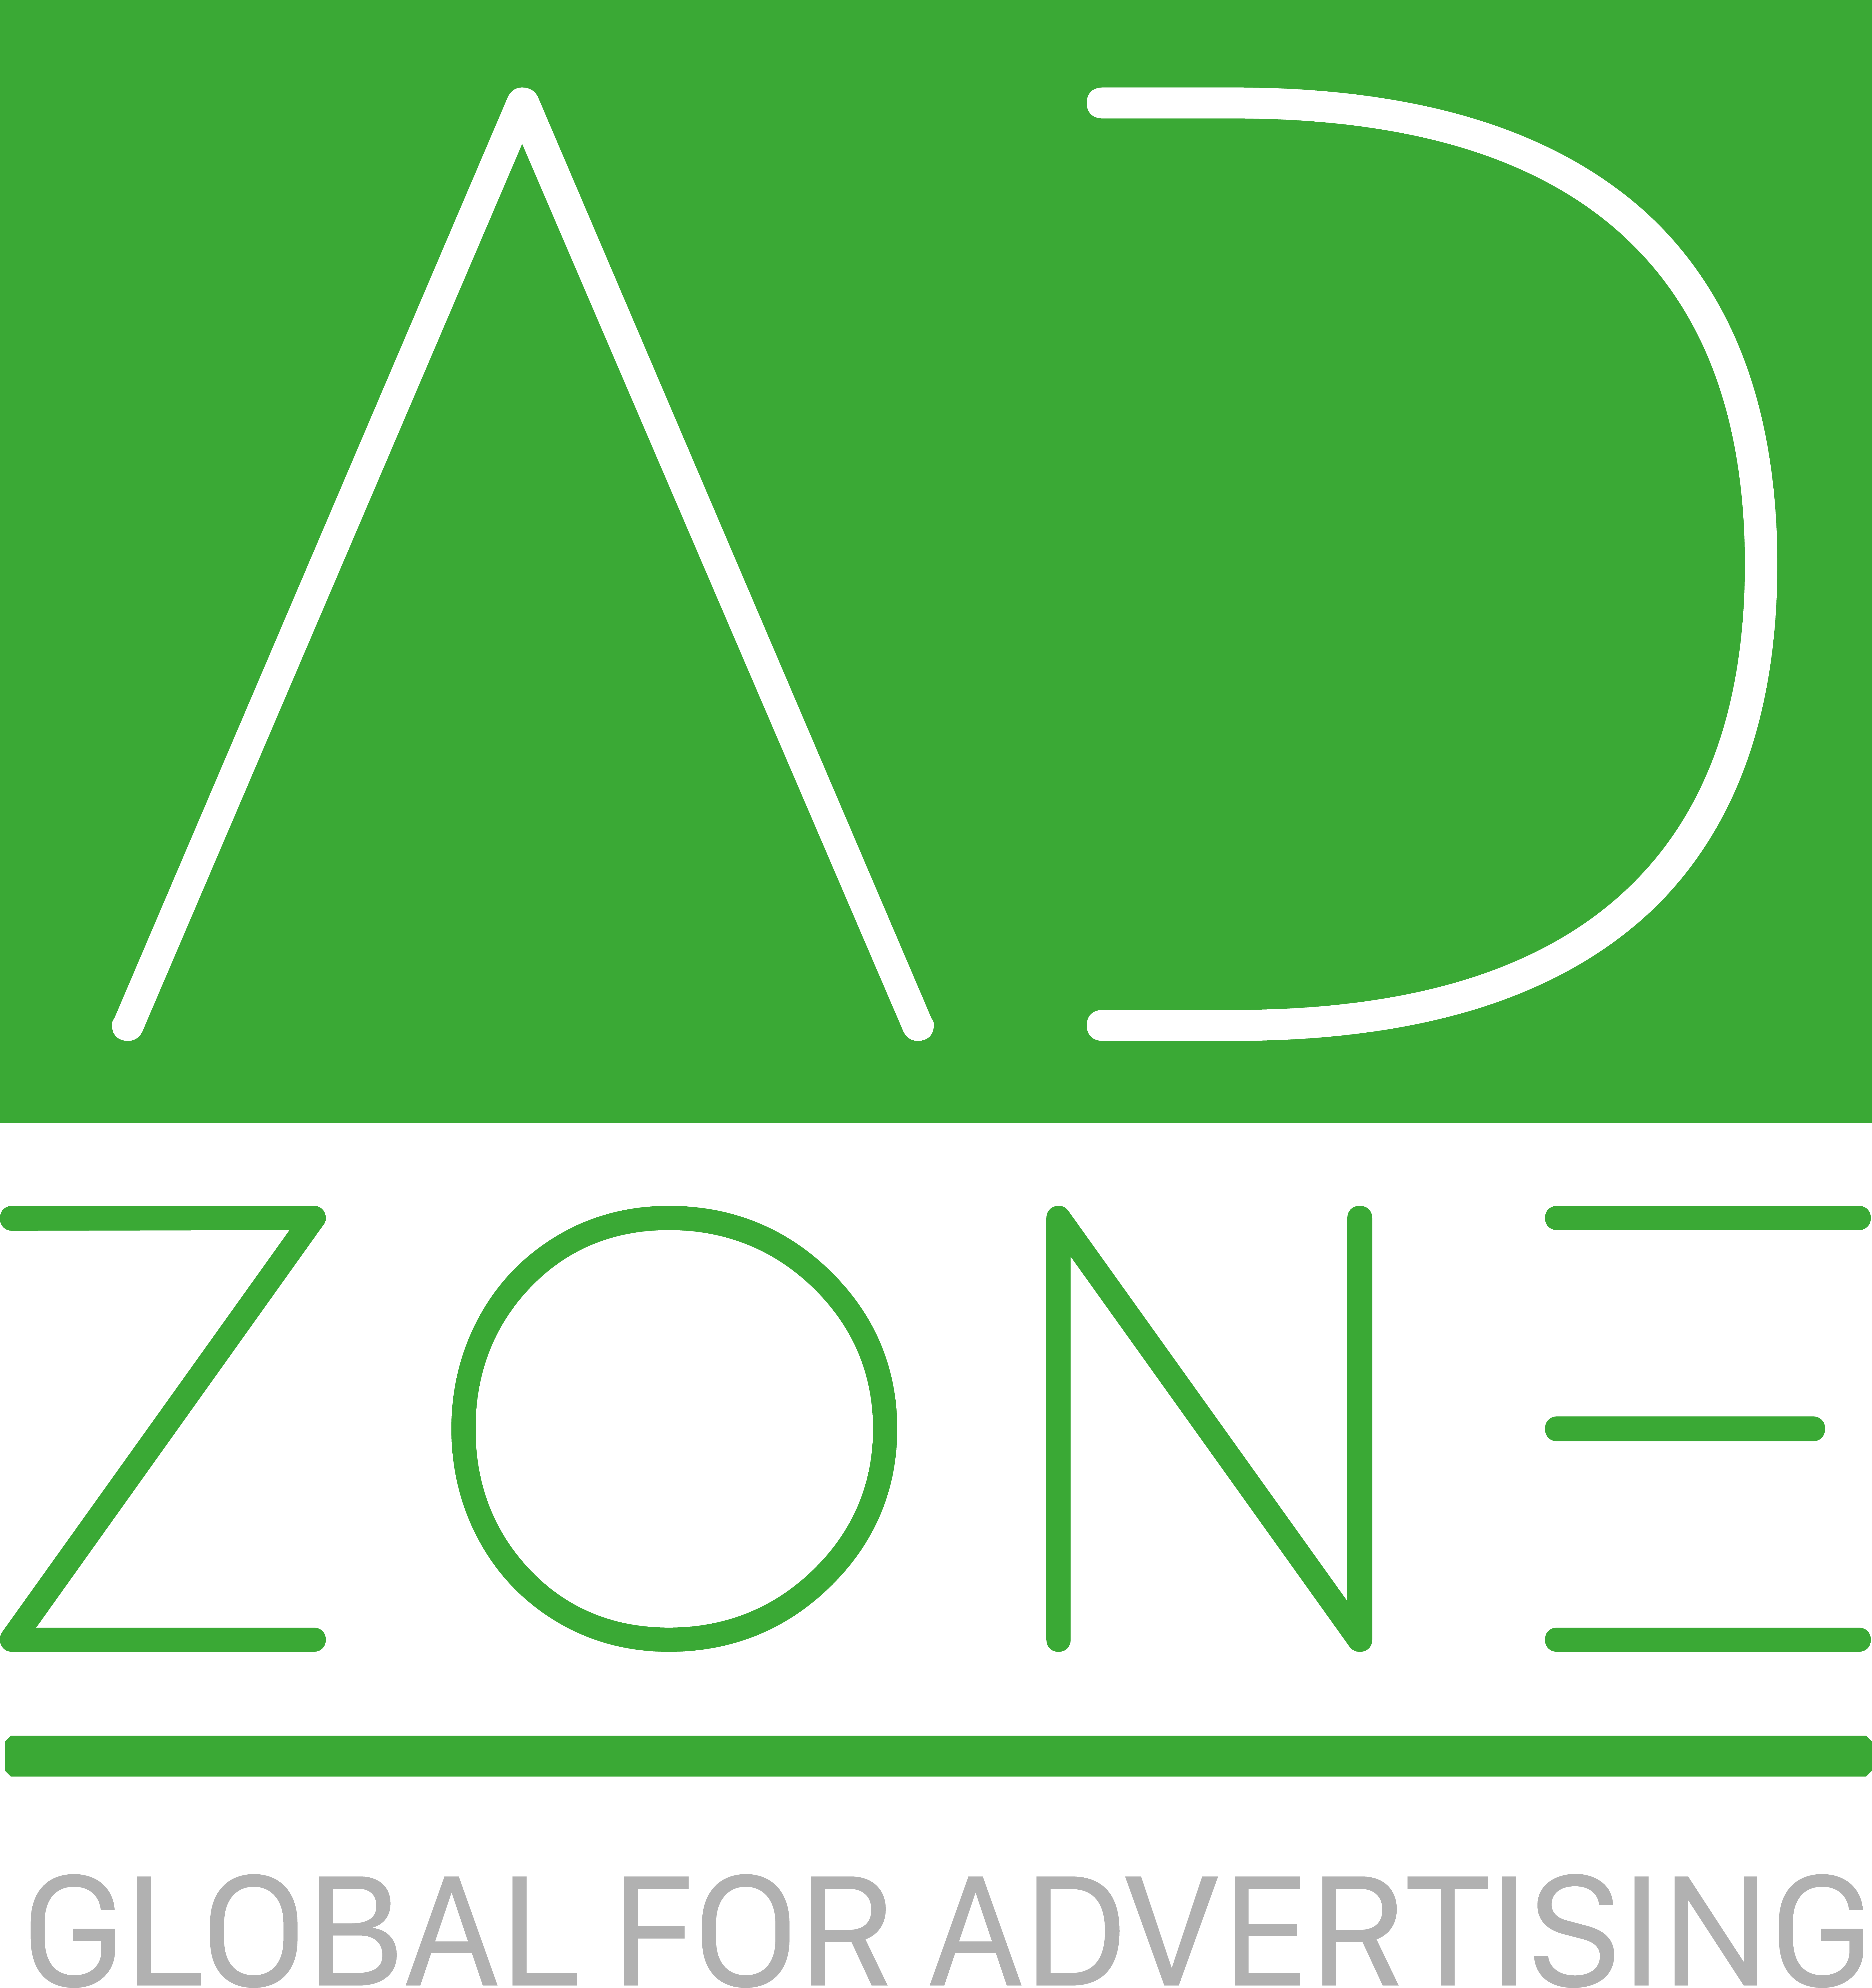 Ad Zone